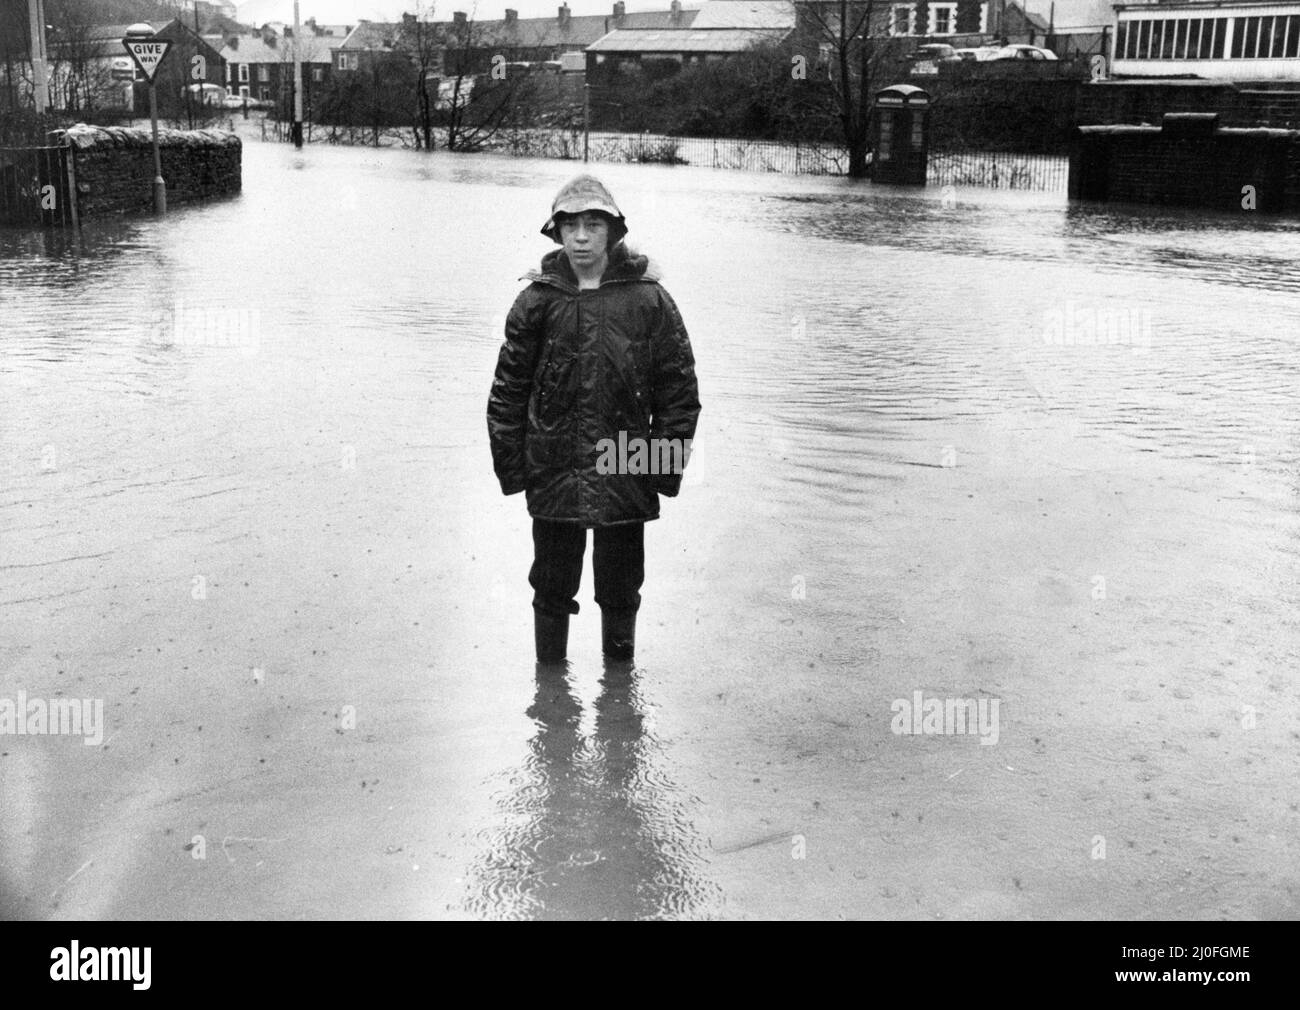 Walisische Überschwemmungen 1979, unser Bild zeigt ... Wasser, Wasser überall, Mark Lewis, 11 Jahre alt, findet auf der Hauptstraße von Pontypridd nach Porth in Hopkinstown, 27.. Dezember 1979, einen verlassenen Platz. Stockfoto